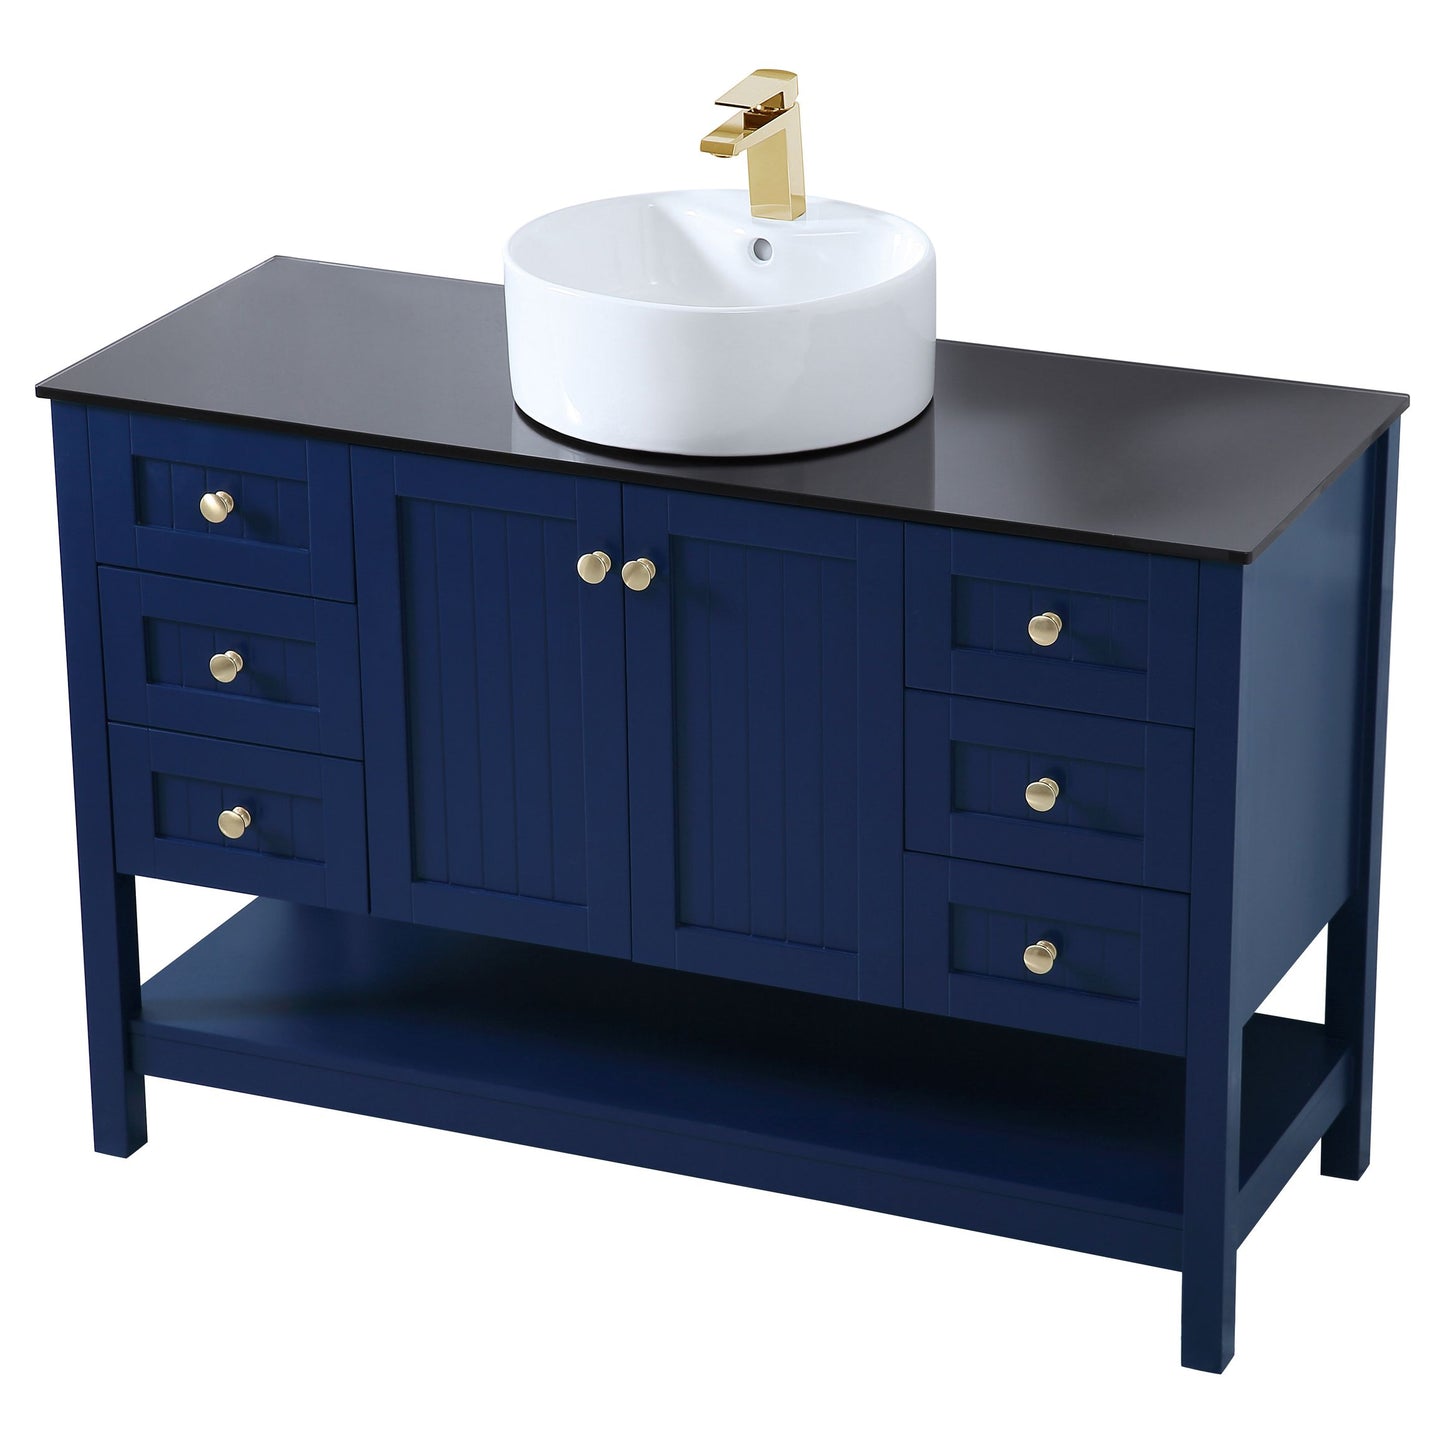 VF16248BL 48" Vessel Sink Bathroom Vanity in Blue